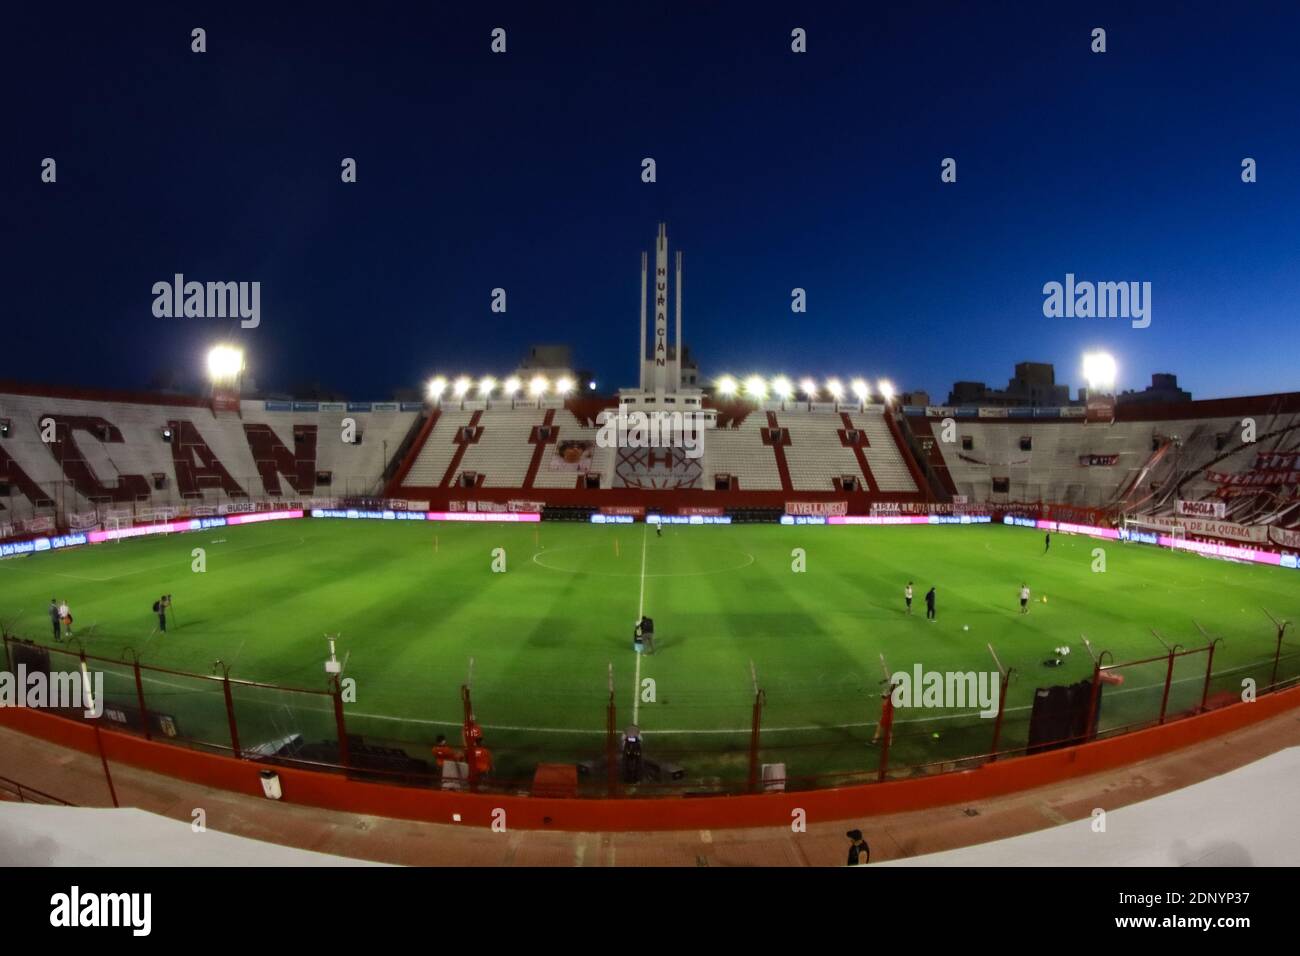 during the match between Huracan and Independiente for Liga Profesional de Fútbol at Tomas A Ducó Stadium (Photo: Néstor J. Beremblum) Stock Photo